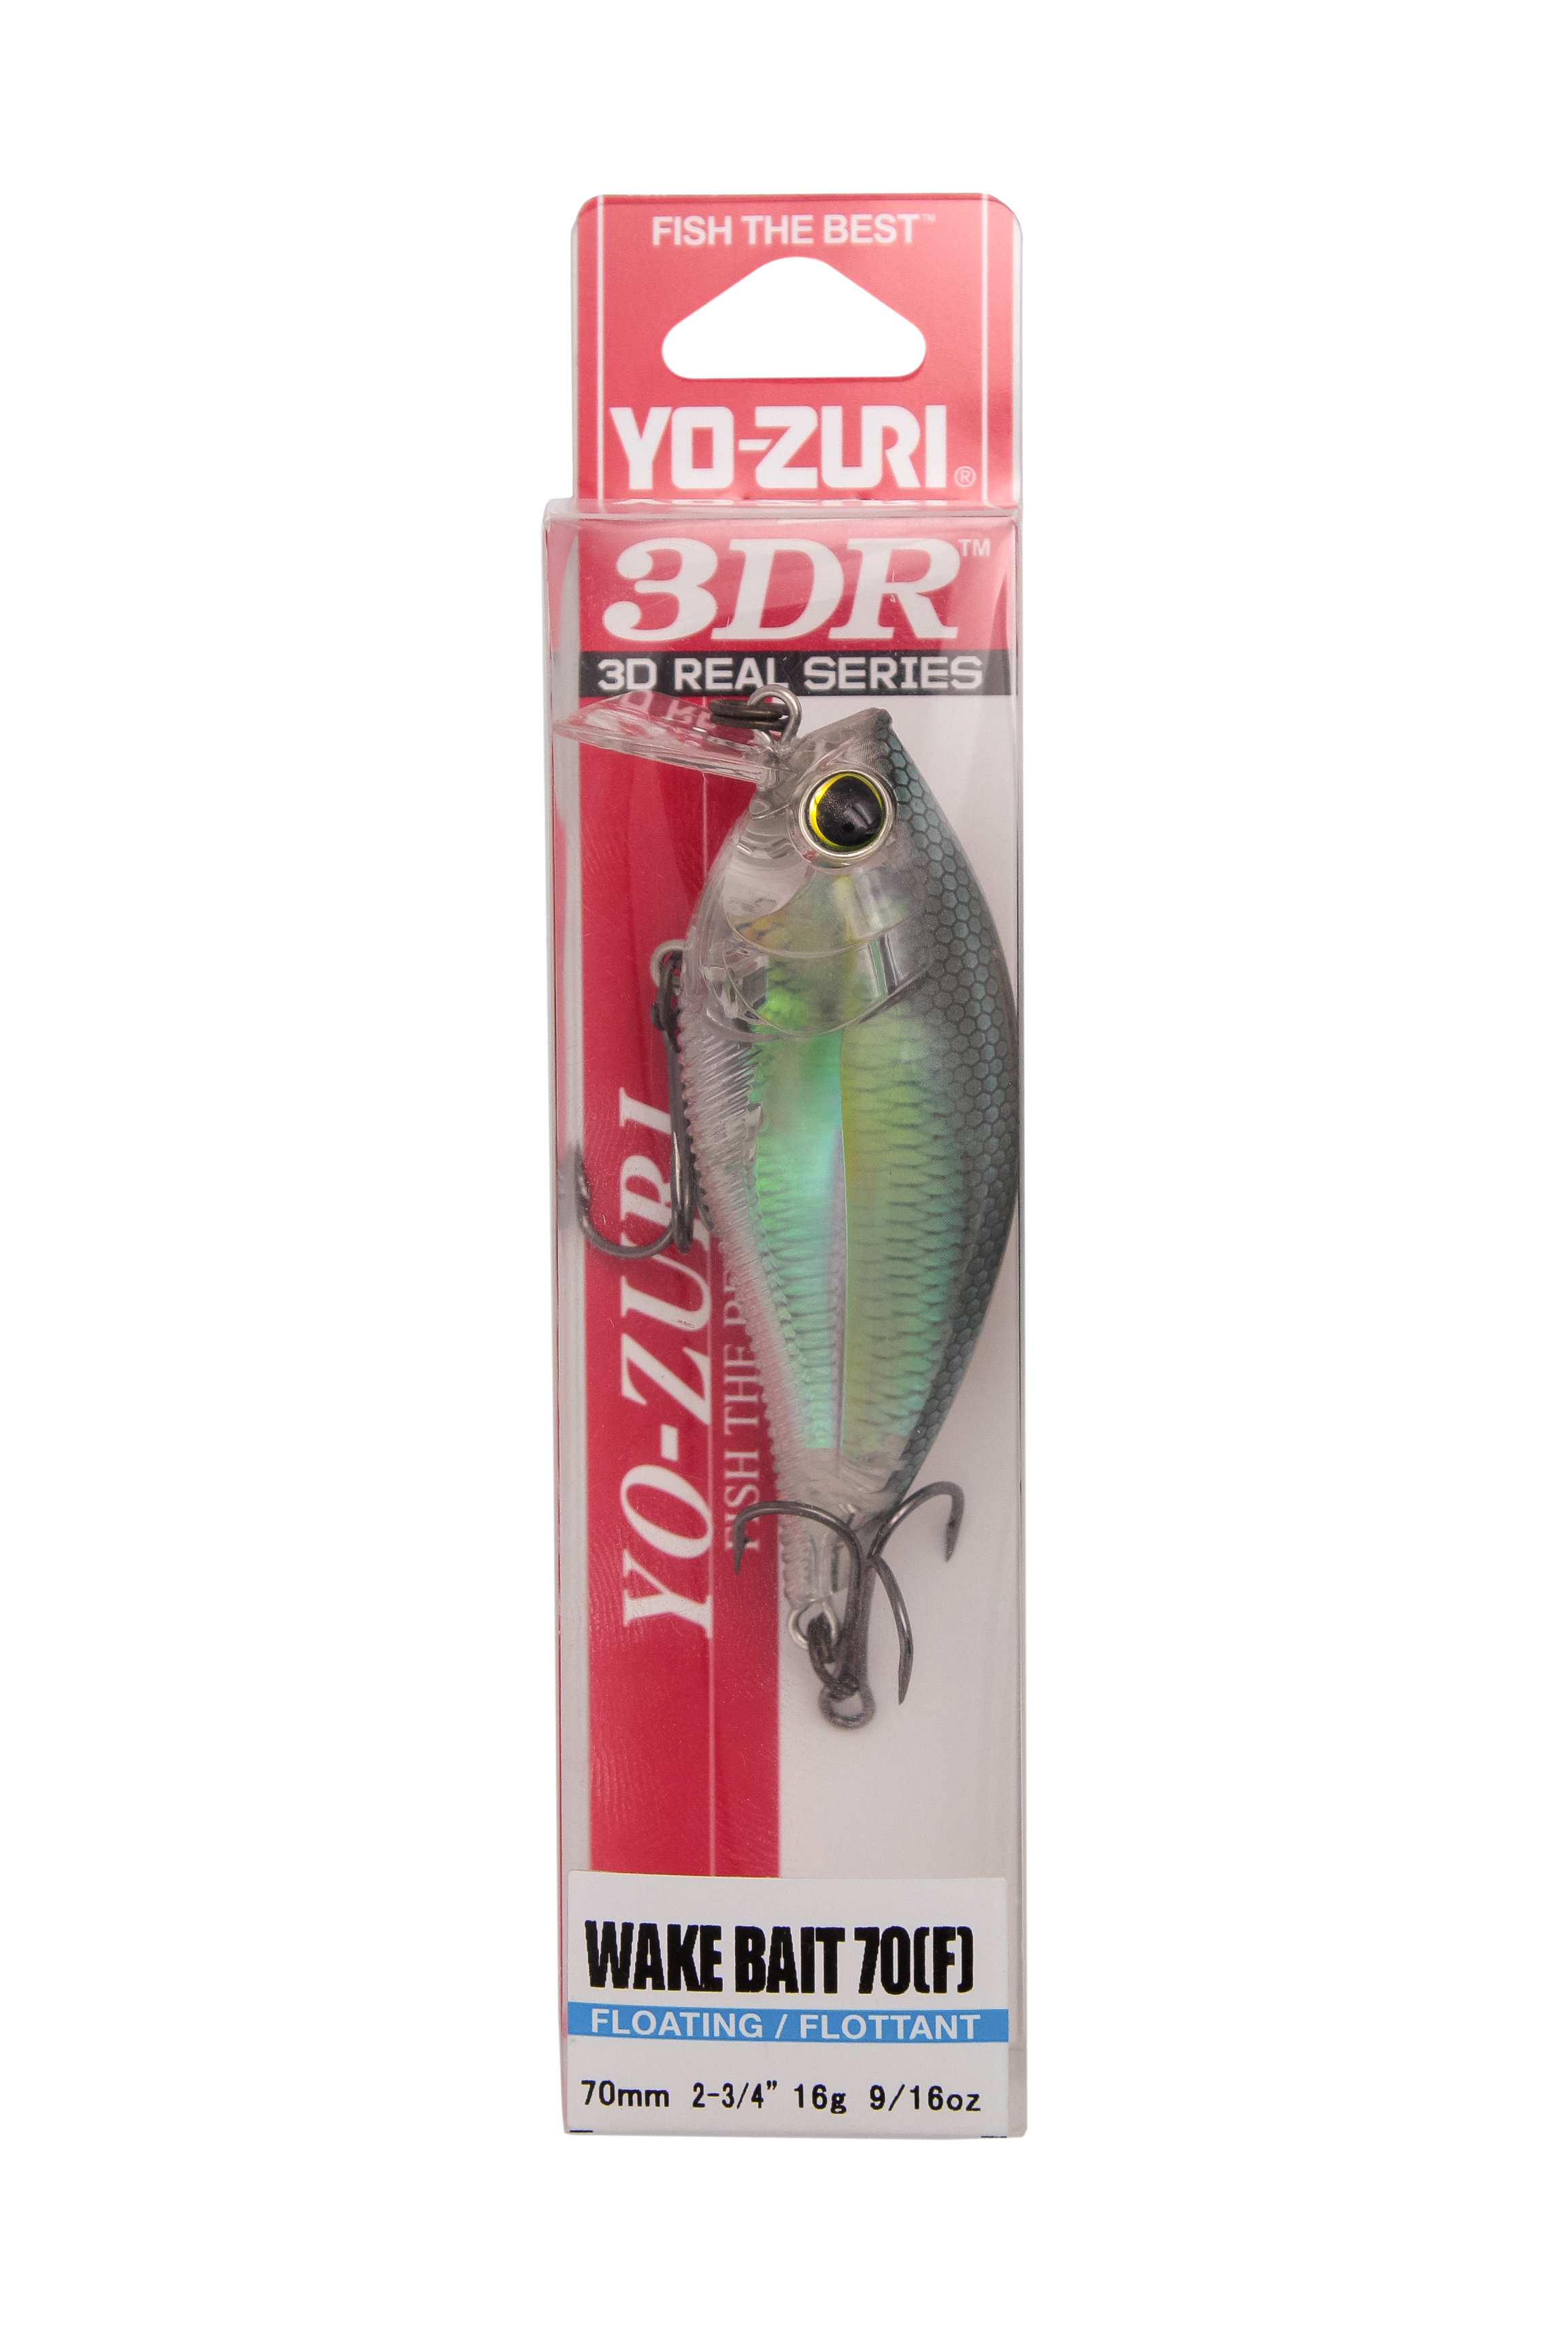 Воблер Yo-Zuri 3DR wake bait 70F R1314 RGZS - фото 1